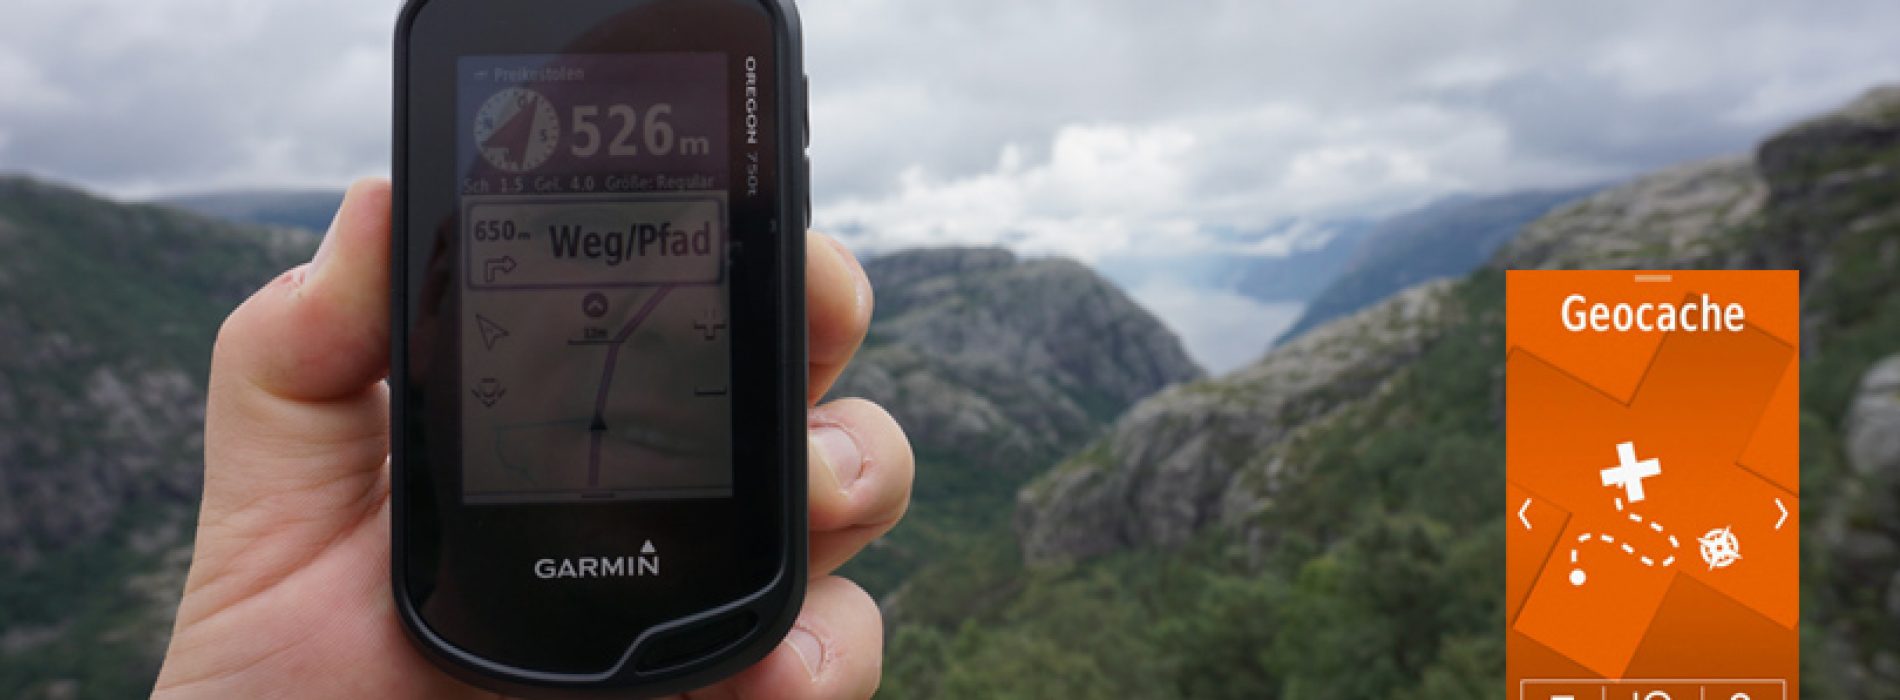 Das beste GPS Gerät zum Geocachen!